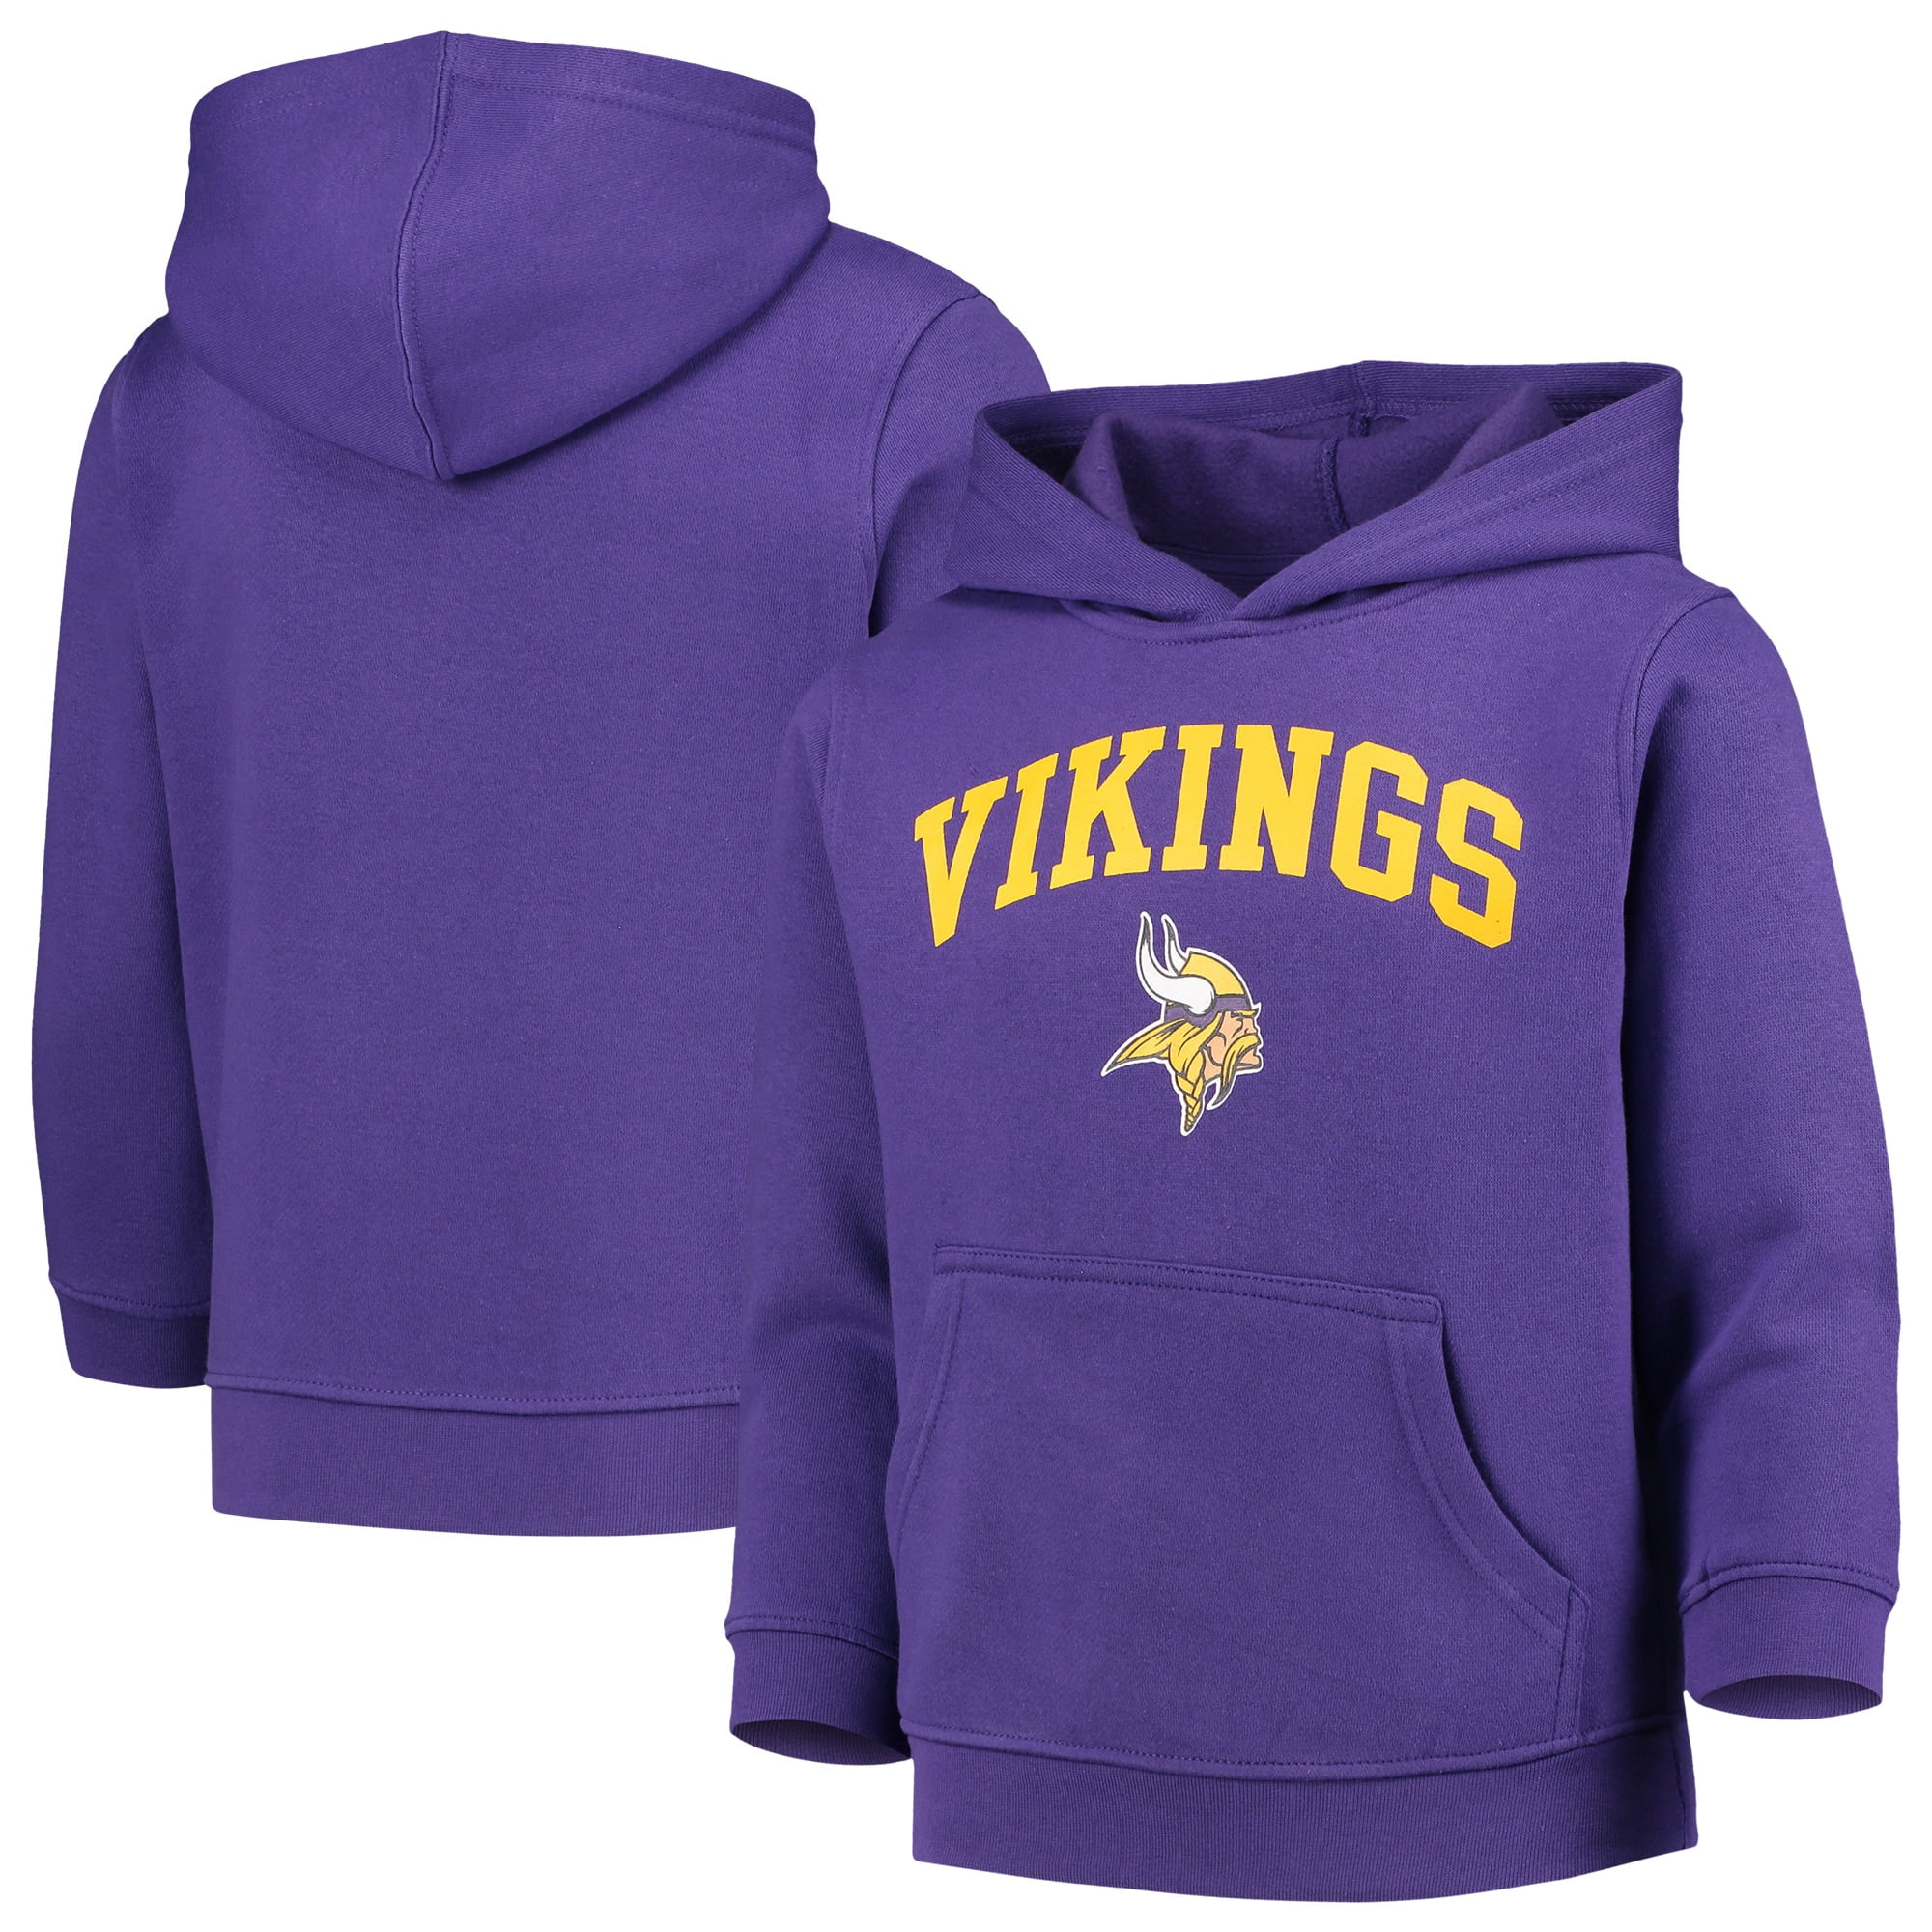 Minnesota Vikings Hoodie Football Sweatshirt Men's Casual Jacket Hooded Pullover 